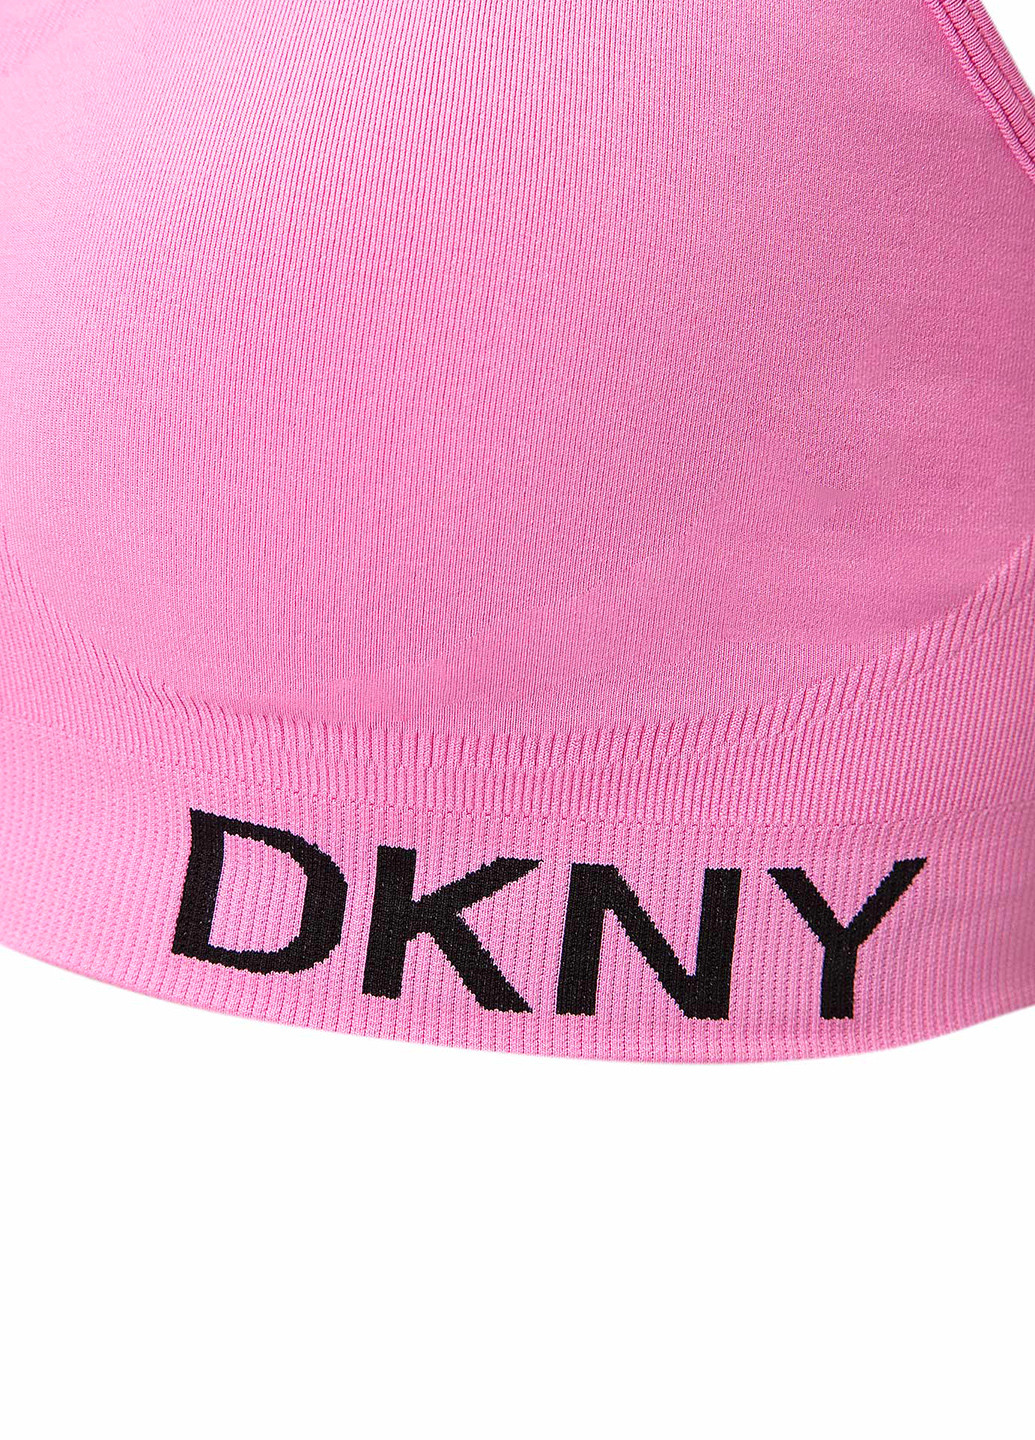 Розовый топ бюстгальтер DKNY без косточек хлопок